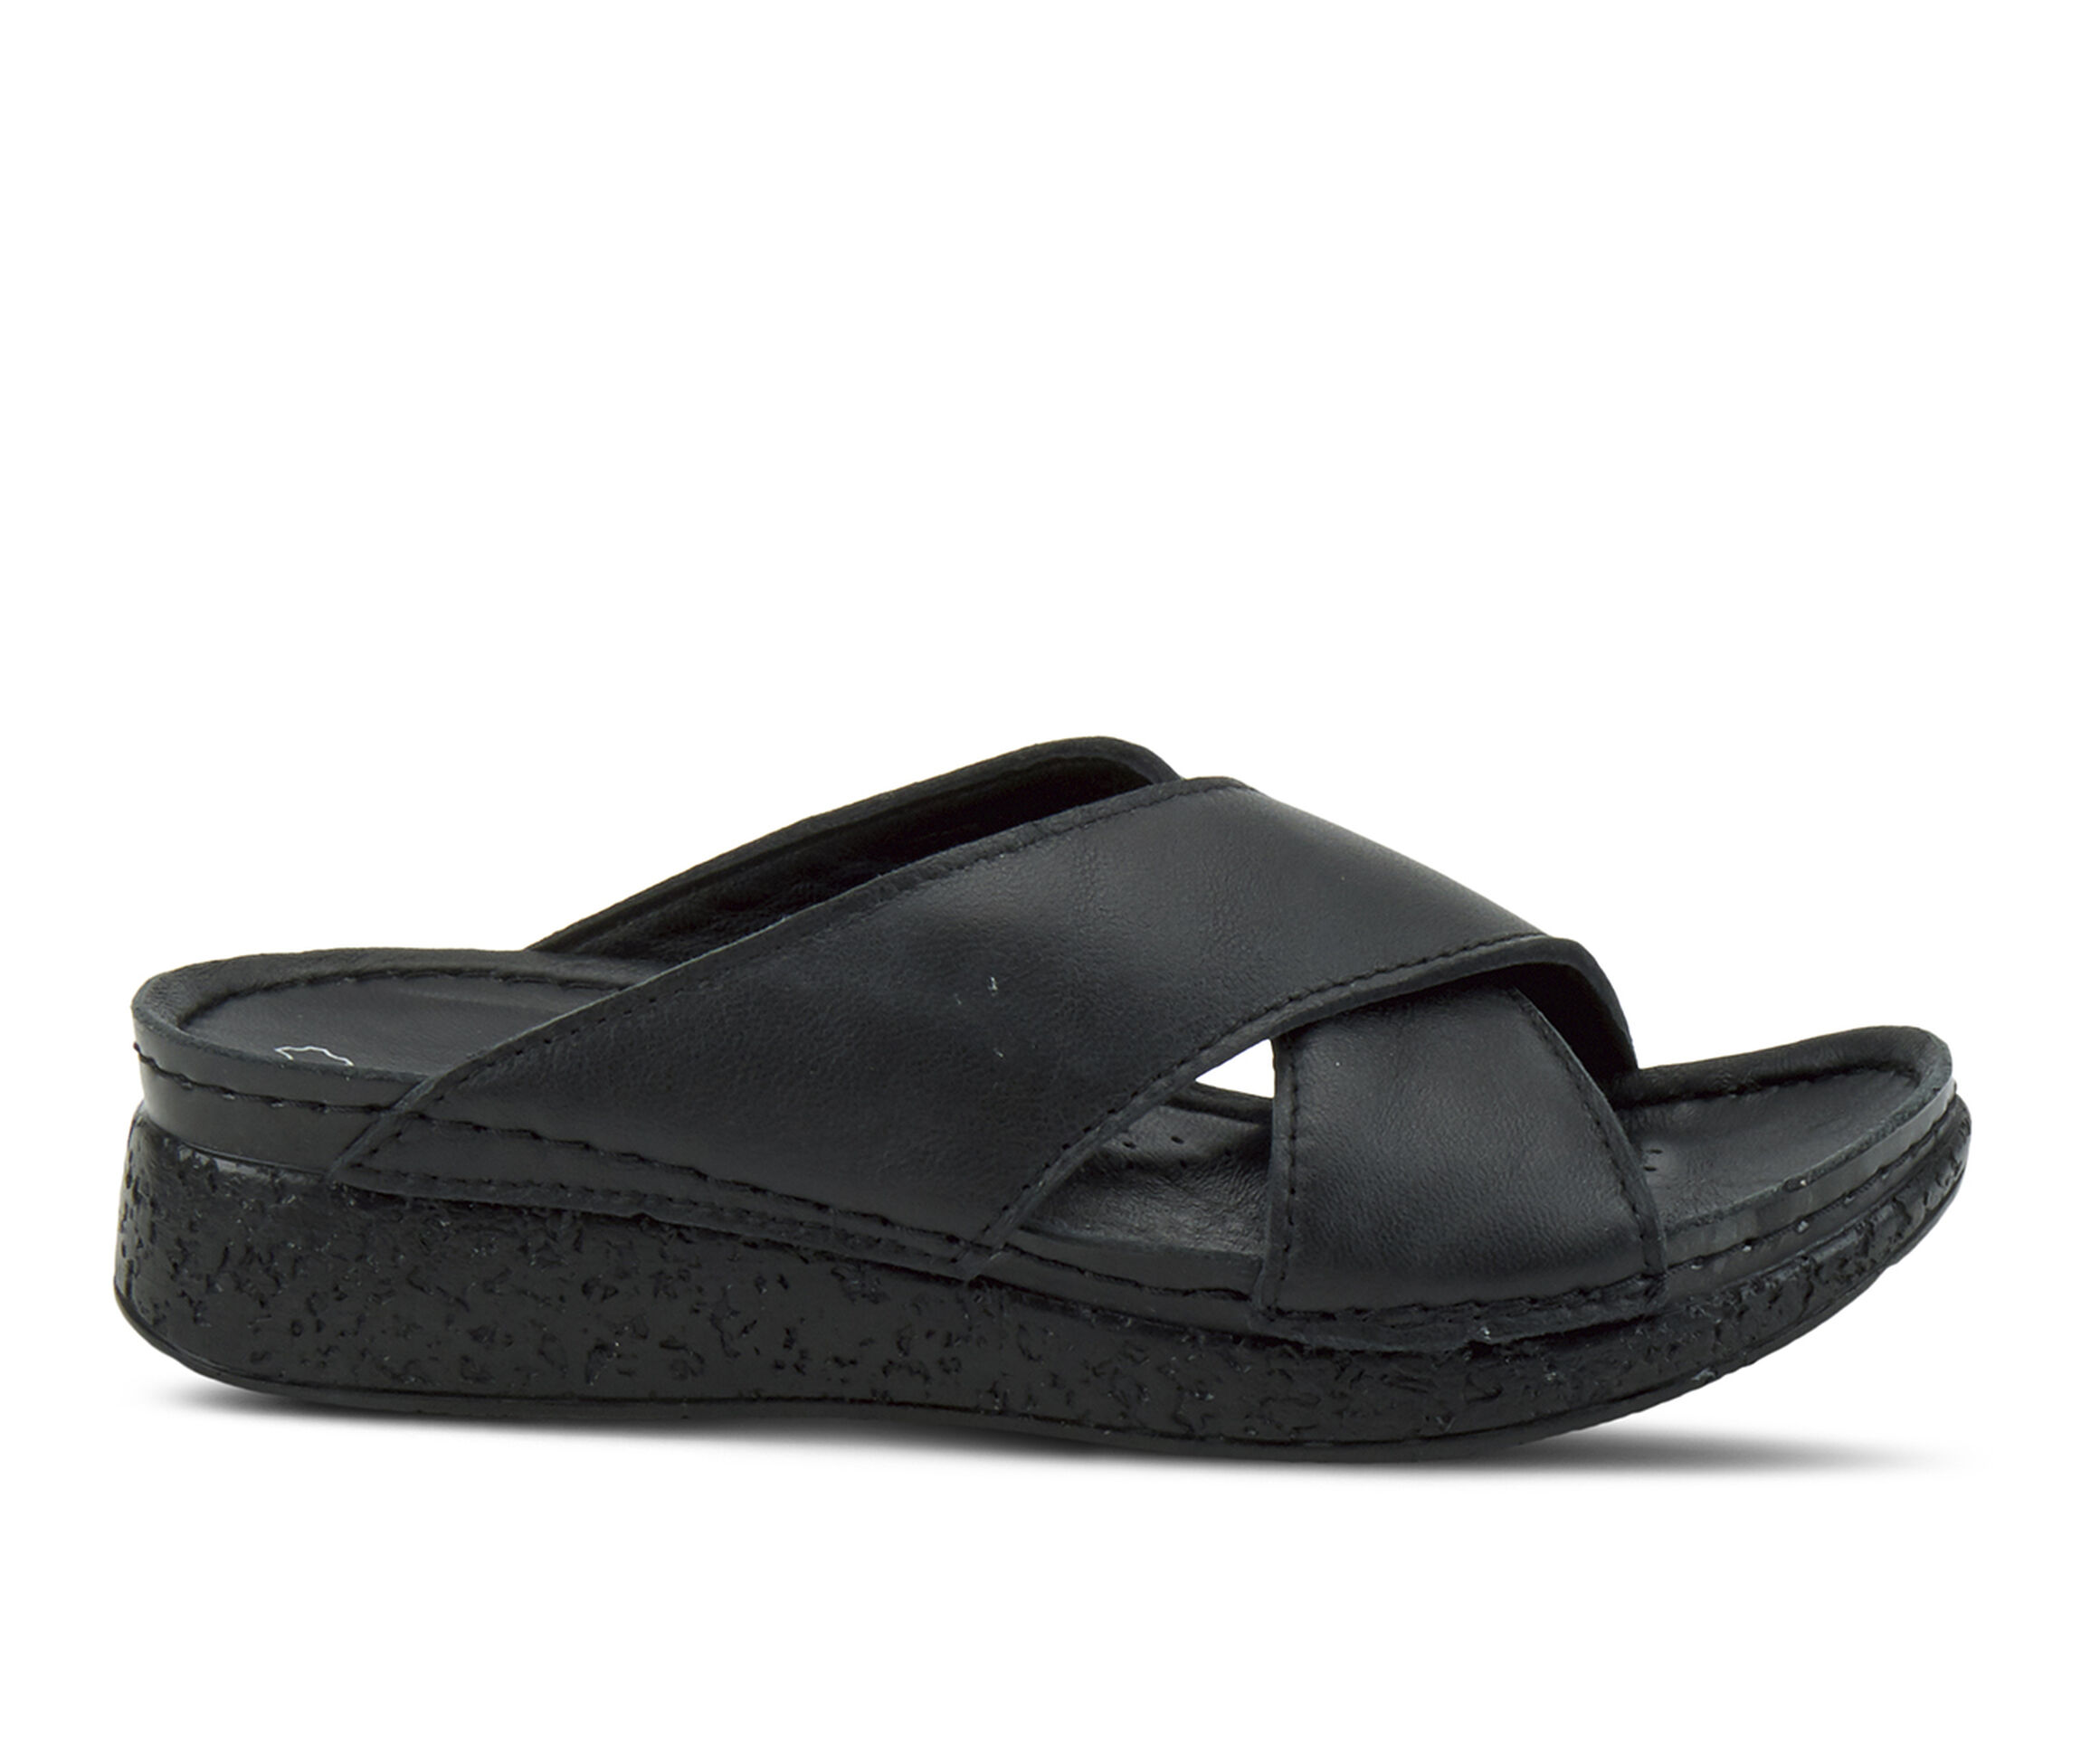 shoe carnival black sandals